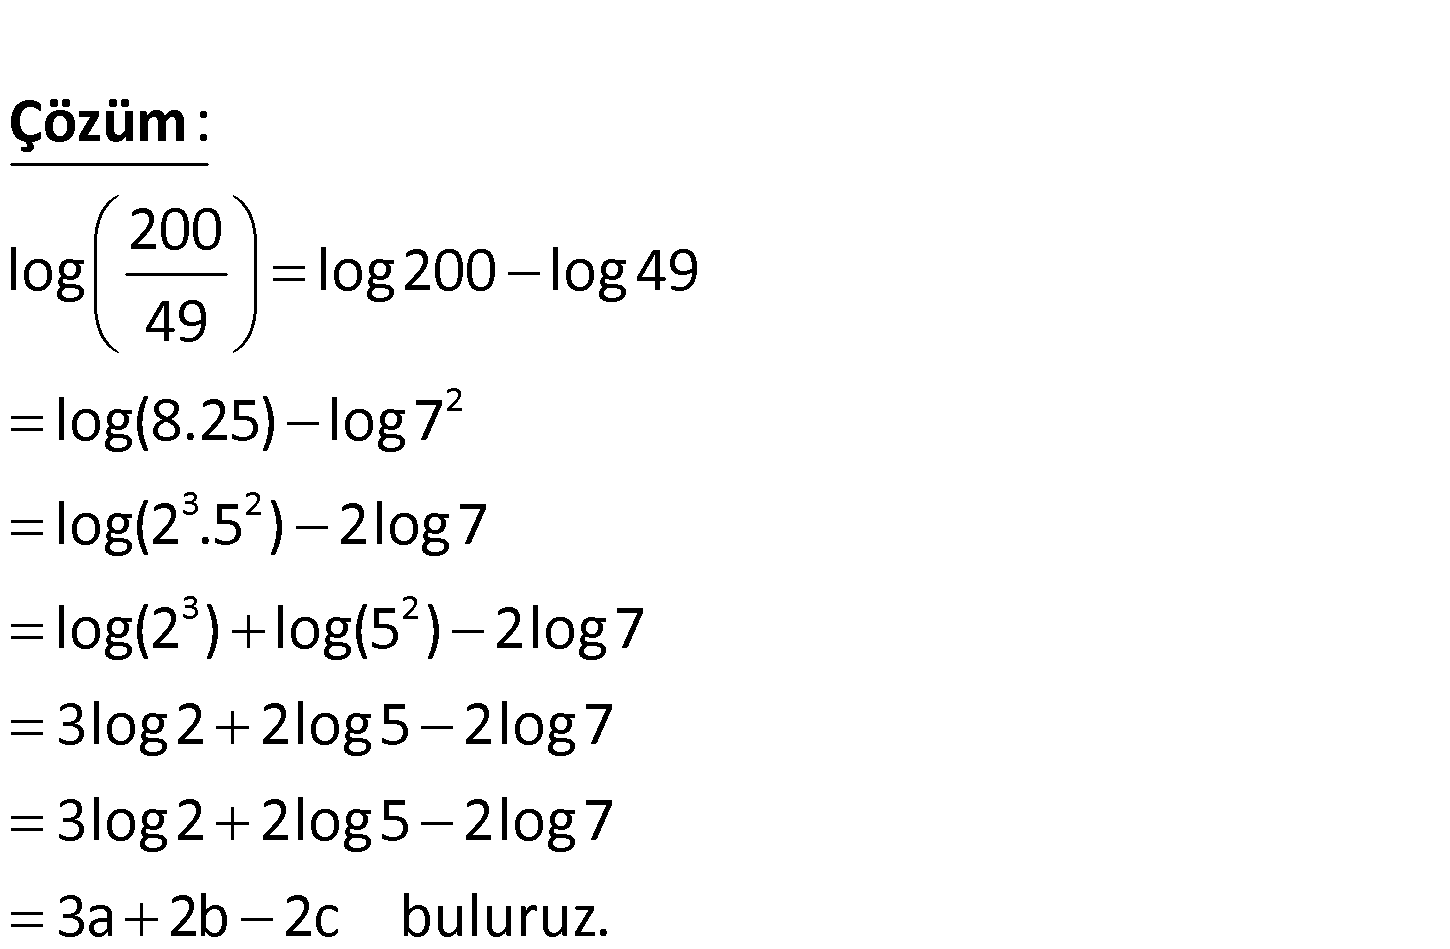 Log log5 2 0. Log2. Log 40. Log2 + log2. 2log2 5.